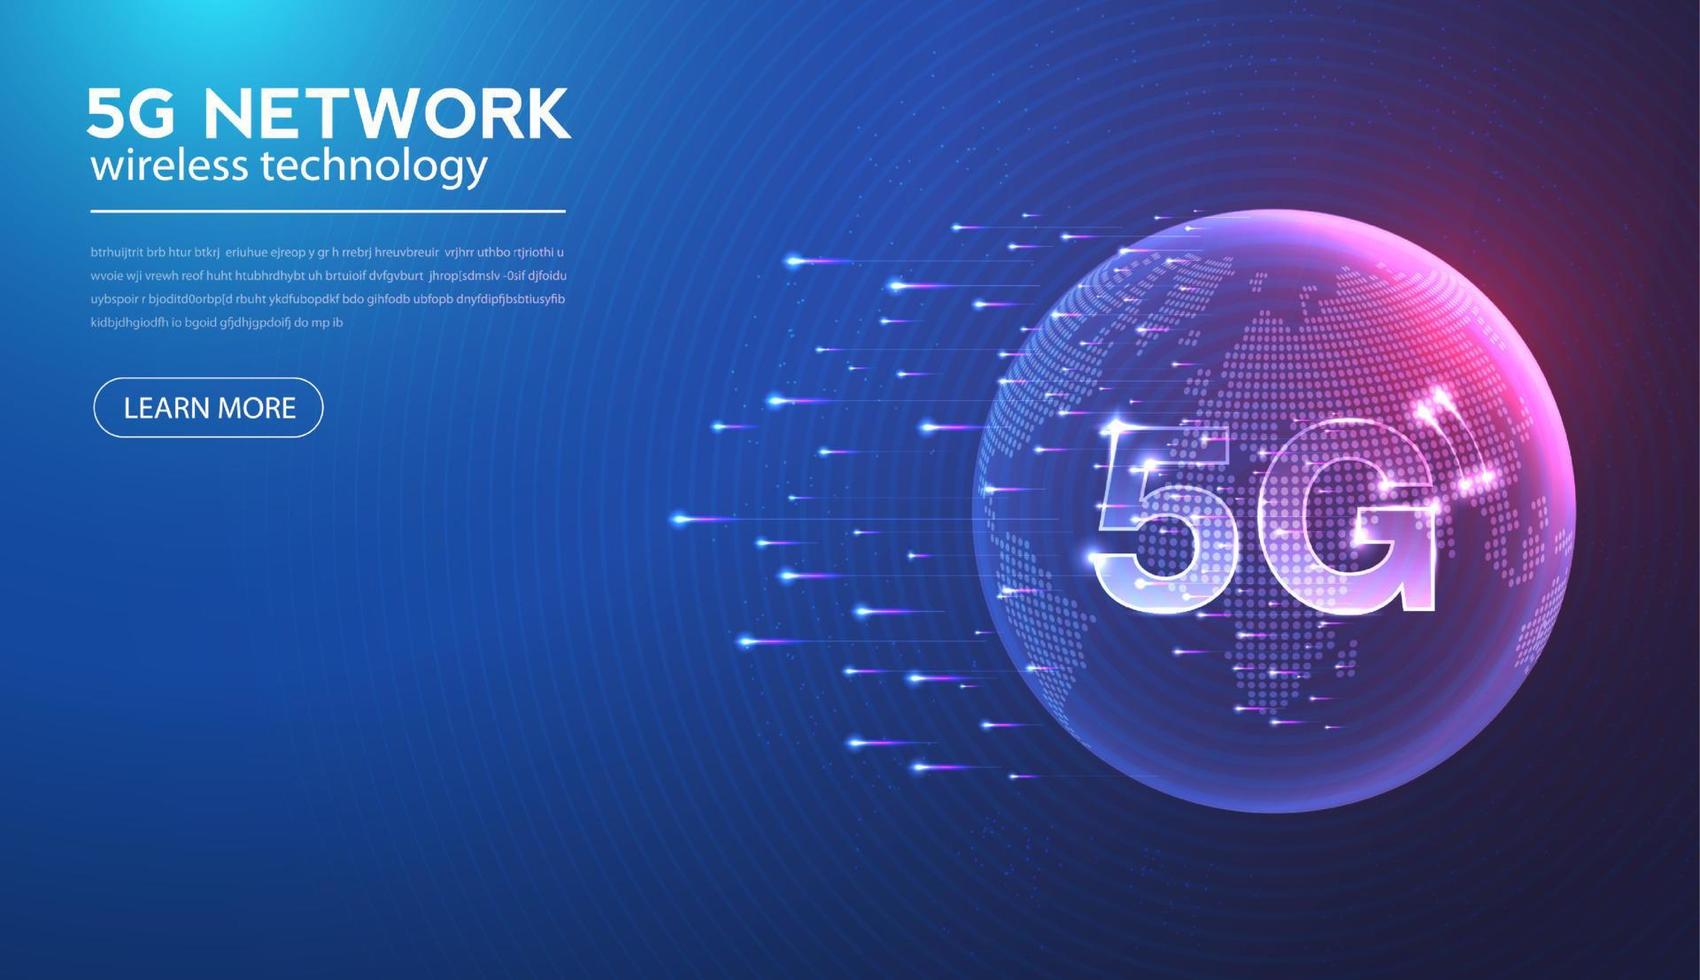 rede 5g internet sem fio conexão wi-fi e internet das coisas com moderno. ilustração em vetor tecnologia de taxa de dados de conexão inovação de alta velocidade.